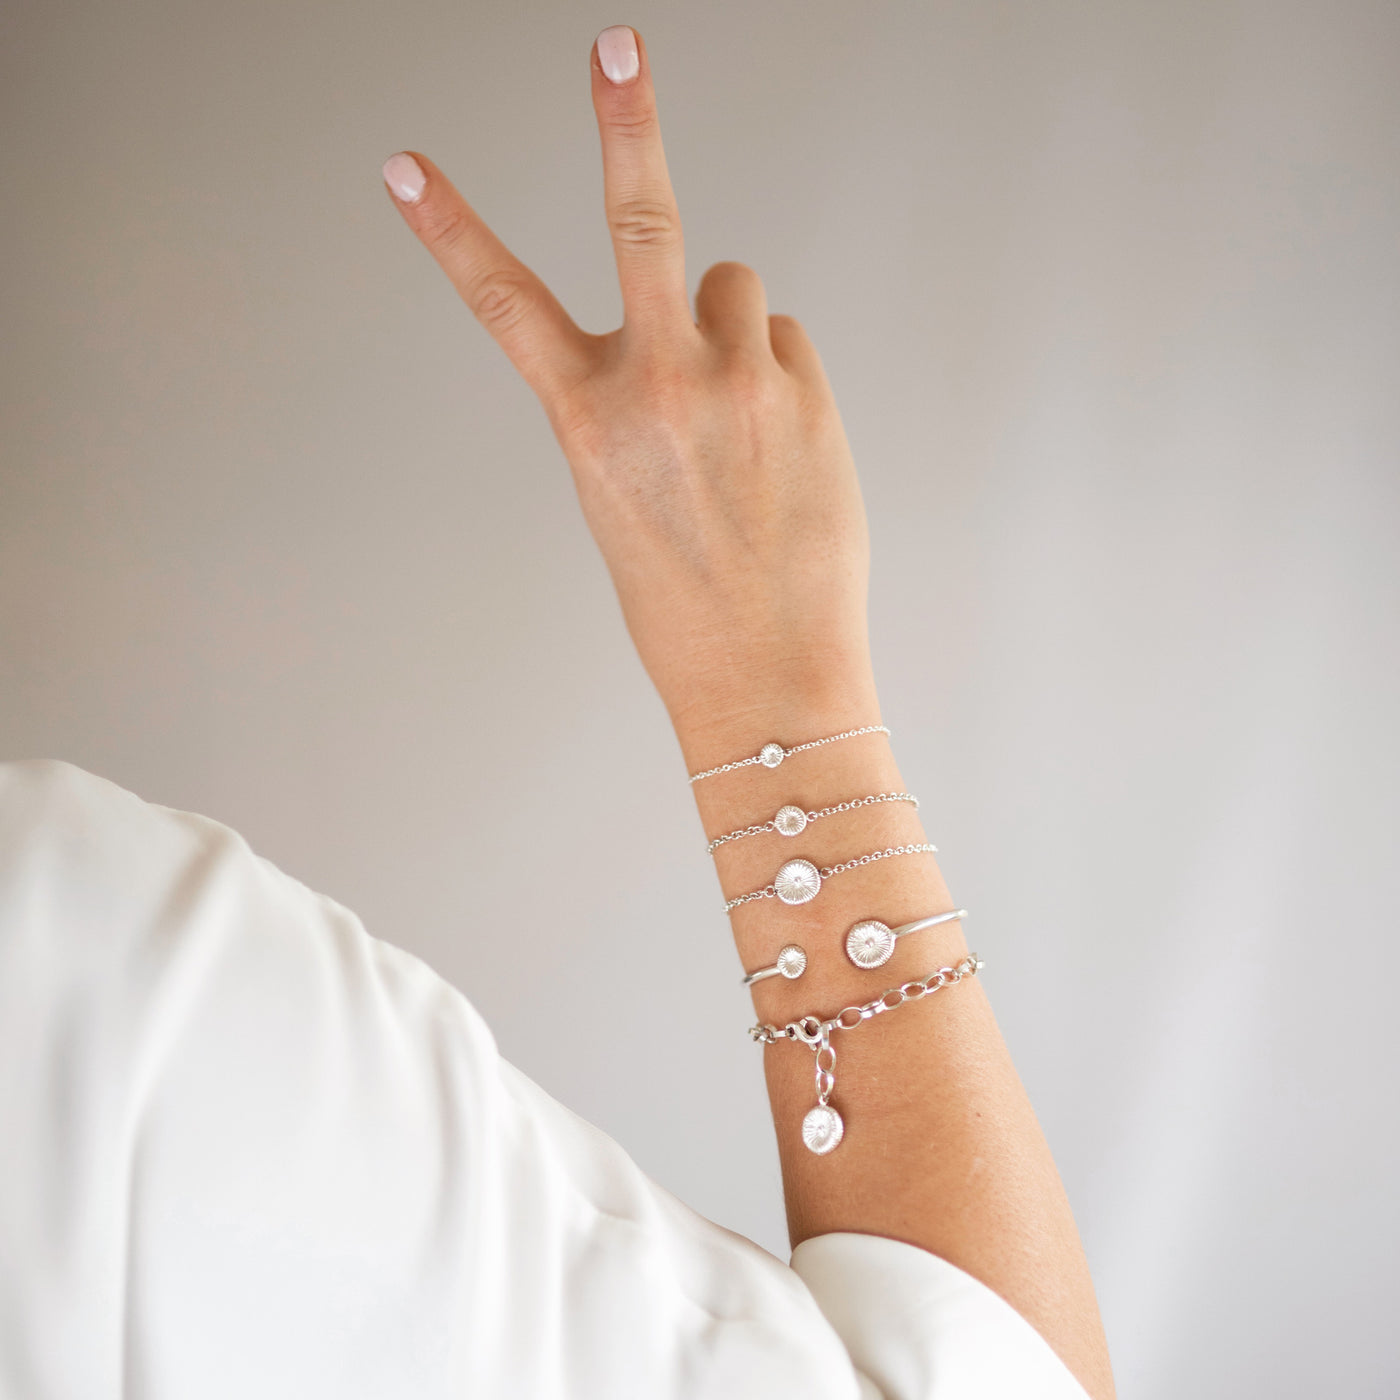 Button coral - Charm bracelet